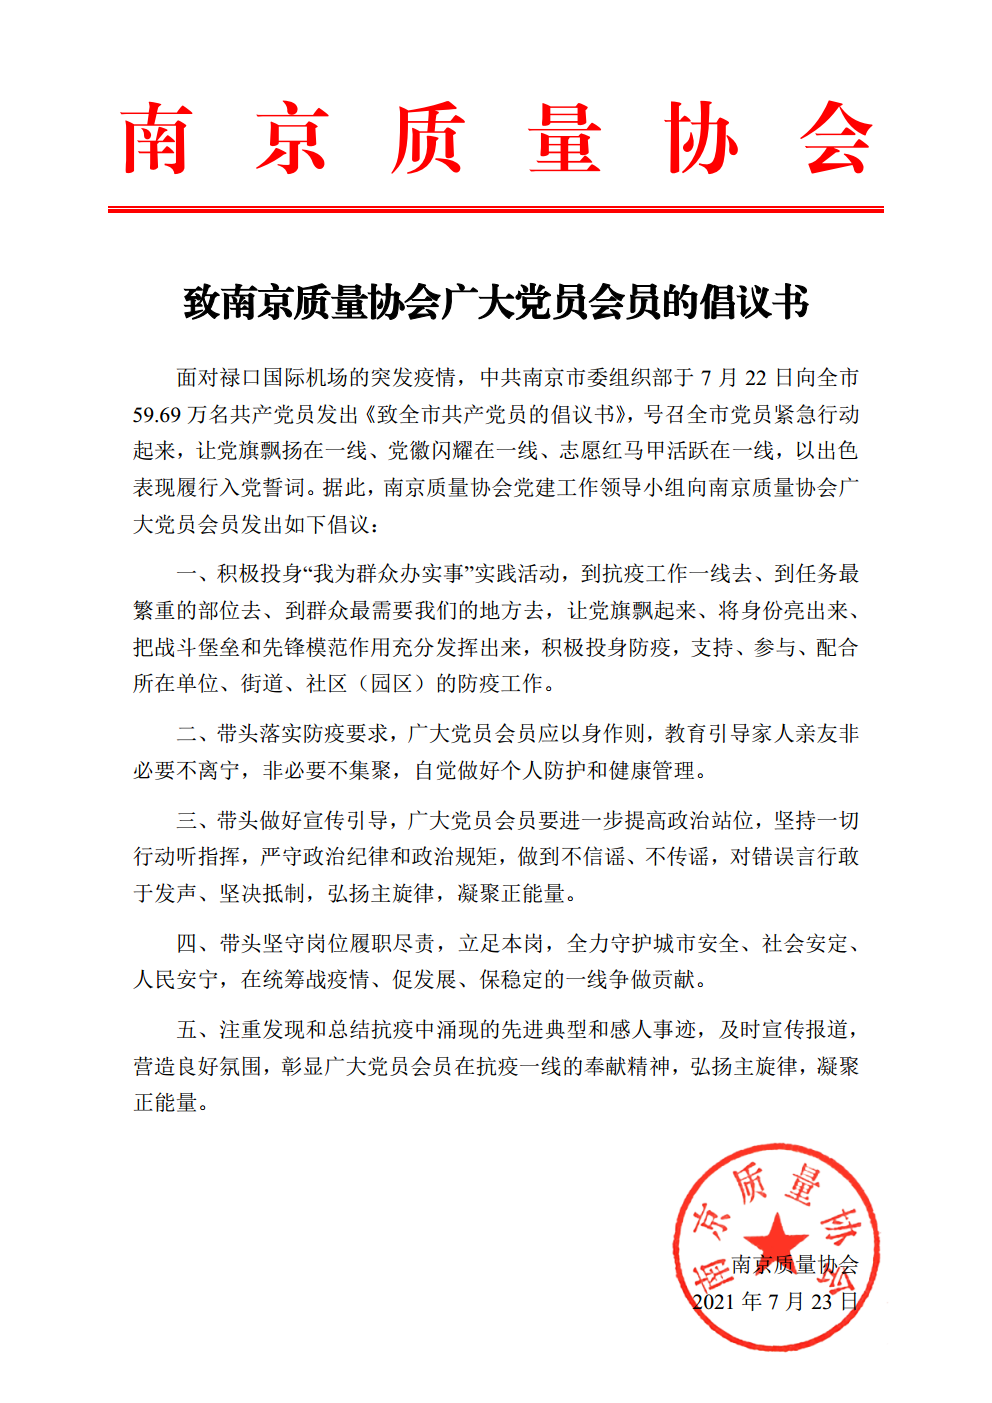 致南京质量协会广大党员会员的倡议书png_Page1.png